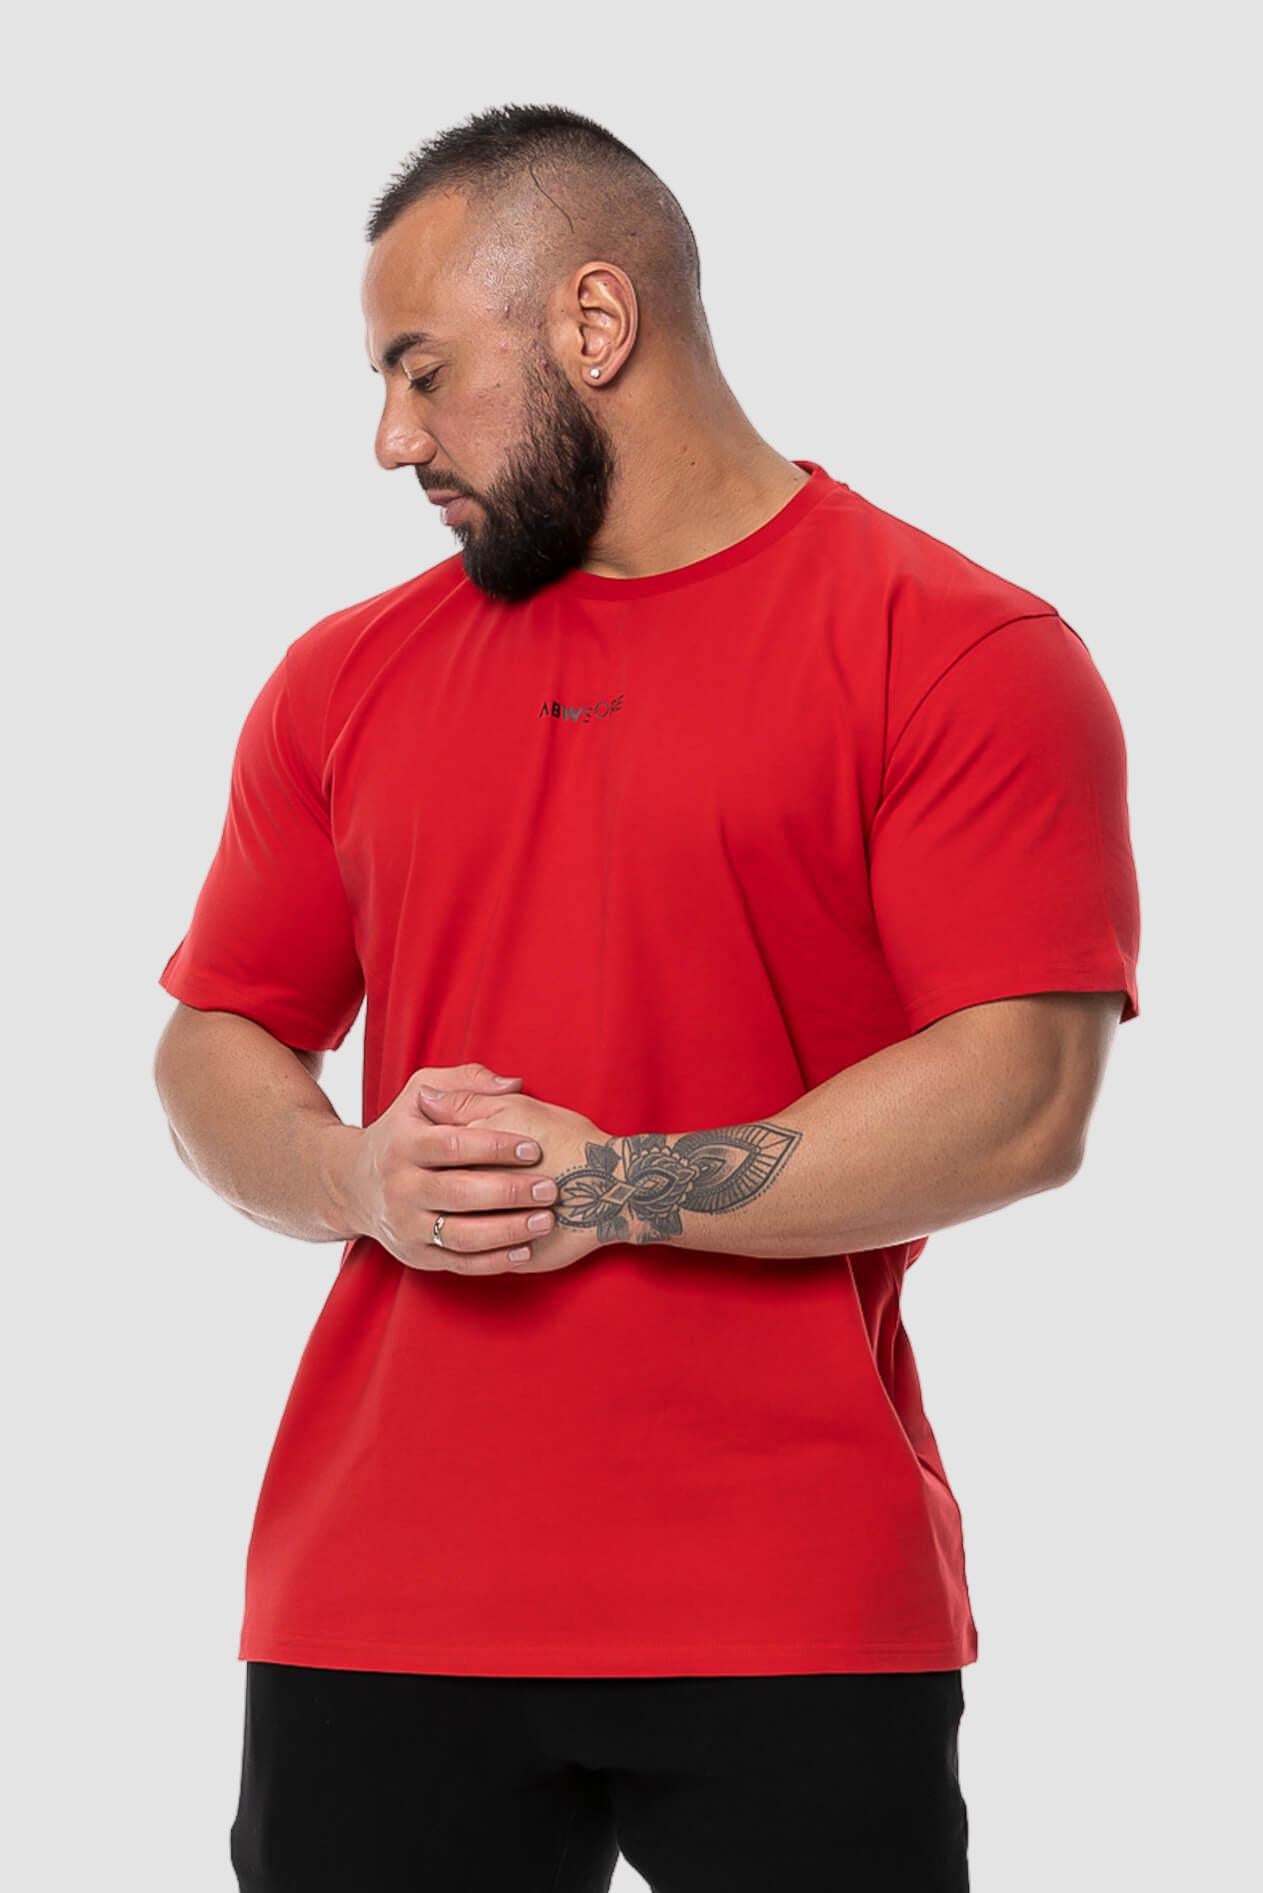 Men's Cotton Short Sleeve Round Neck T-shirt